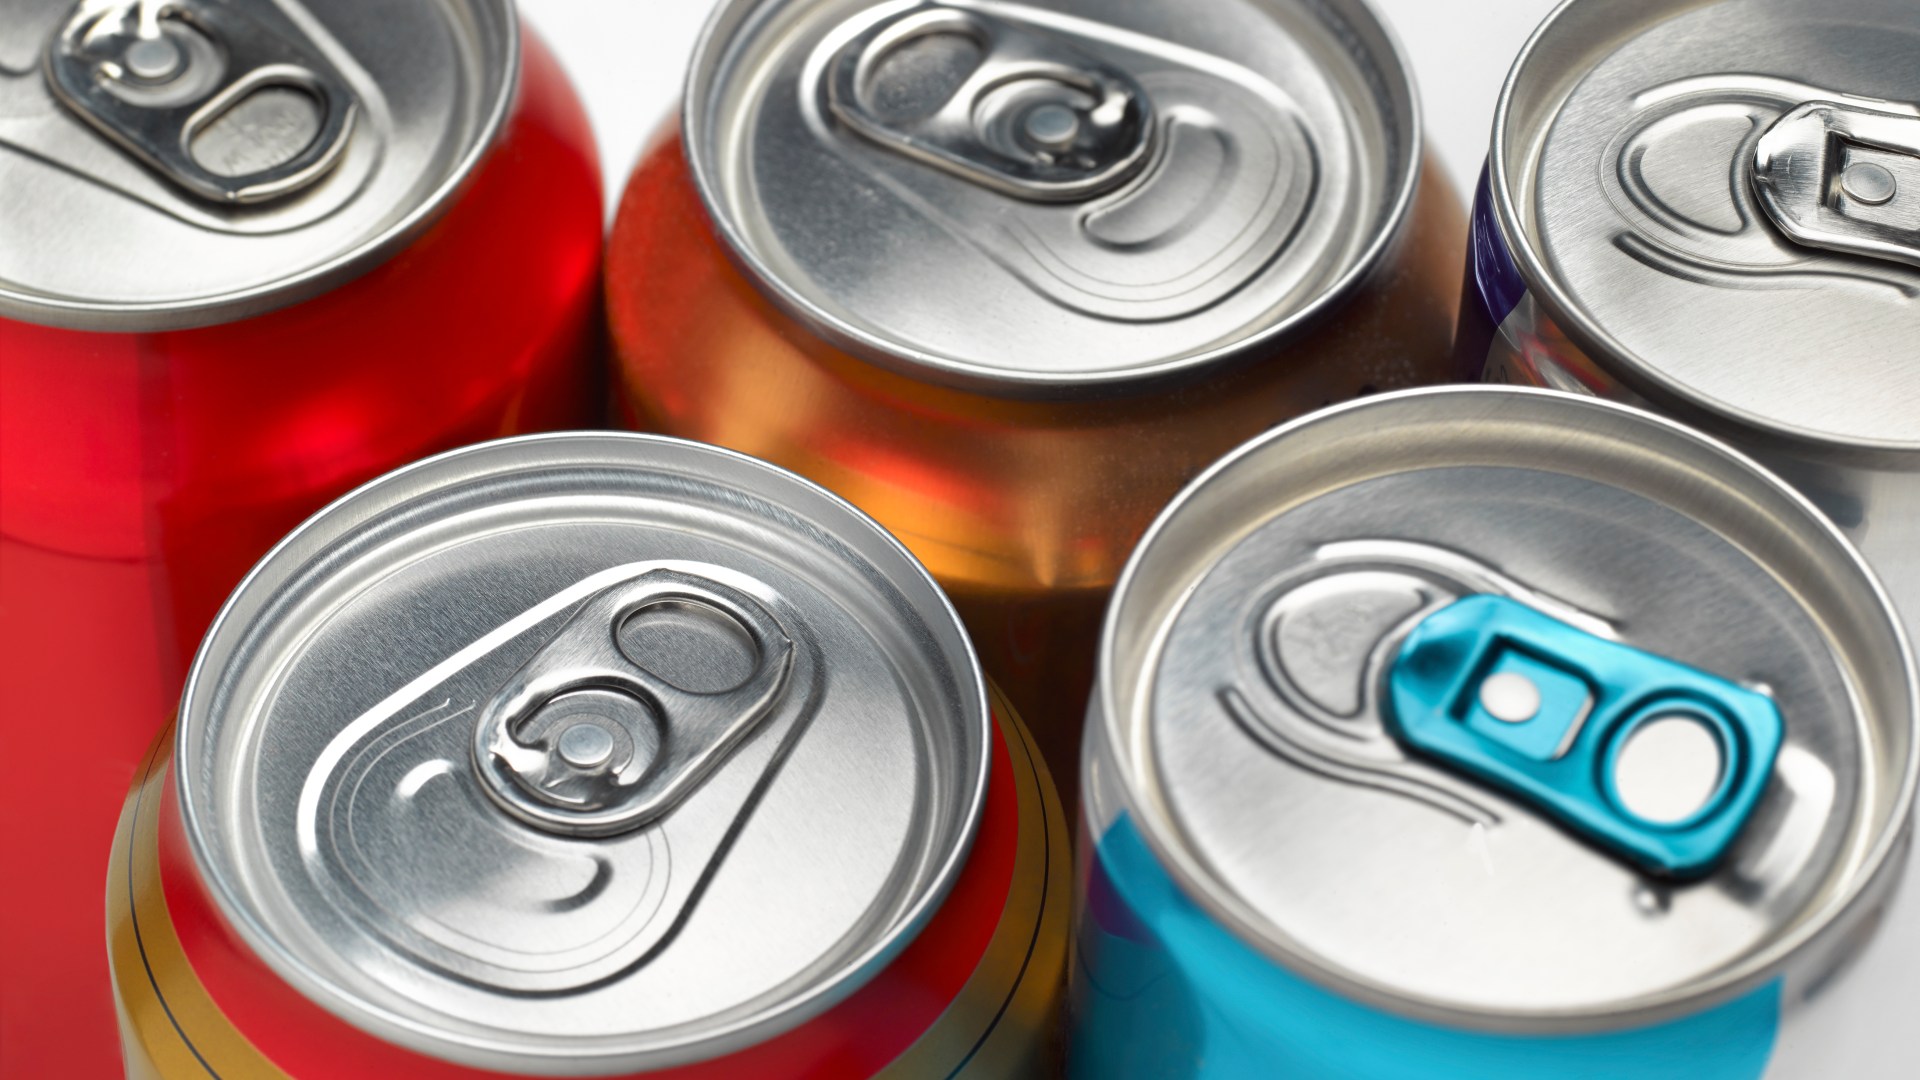 Solo una lattina di Coca-Cola al giorno “aumenta il rischio di malattie renali fatali”